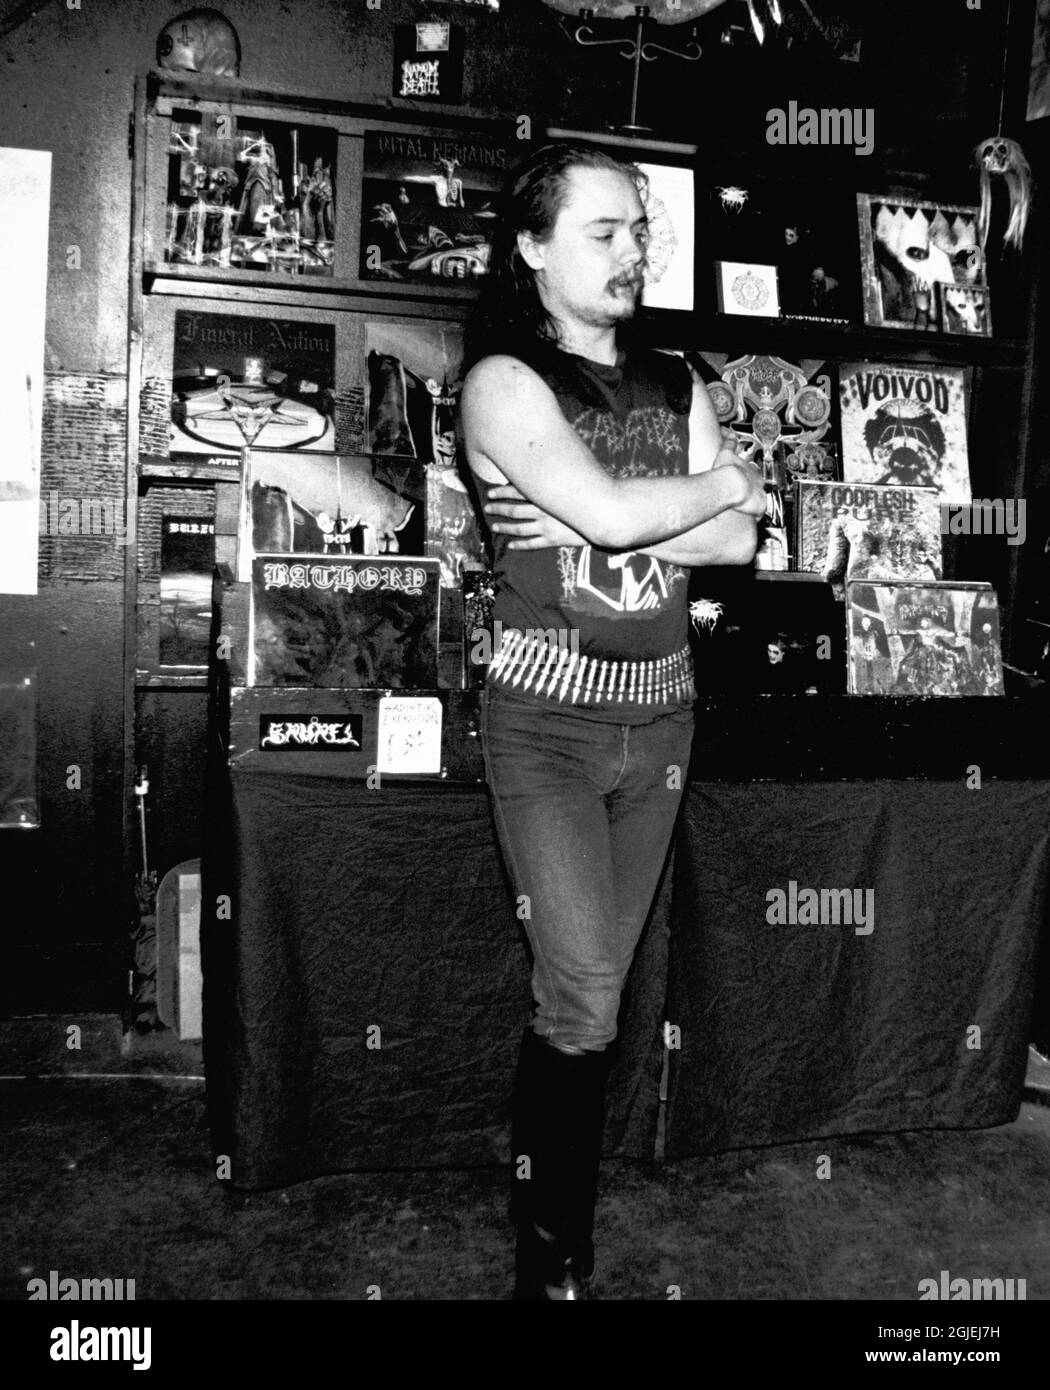 Gothic Rocker Euronym, alias Oystein Aarseth von der Metalband Mayhem. Euronym wurde 1993 vom rivalisierenden satanistischen Death-Metal-Rocker Varg Vikernes (nicht abgebildet) brutal ermordet, der derzeit 21 Jahre im Gefängnis für den Mord absetzt. Die Feuerwehr beim Brand der Skjolds-Kirche in der Nähe von Haugesund, Norwegen, der Varg Vikernes beschuldigt wird. Stockfoto